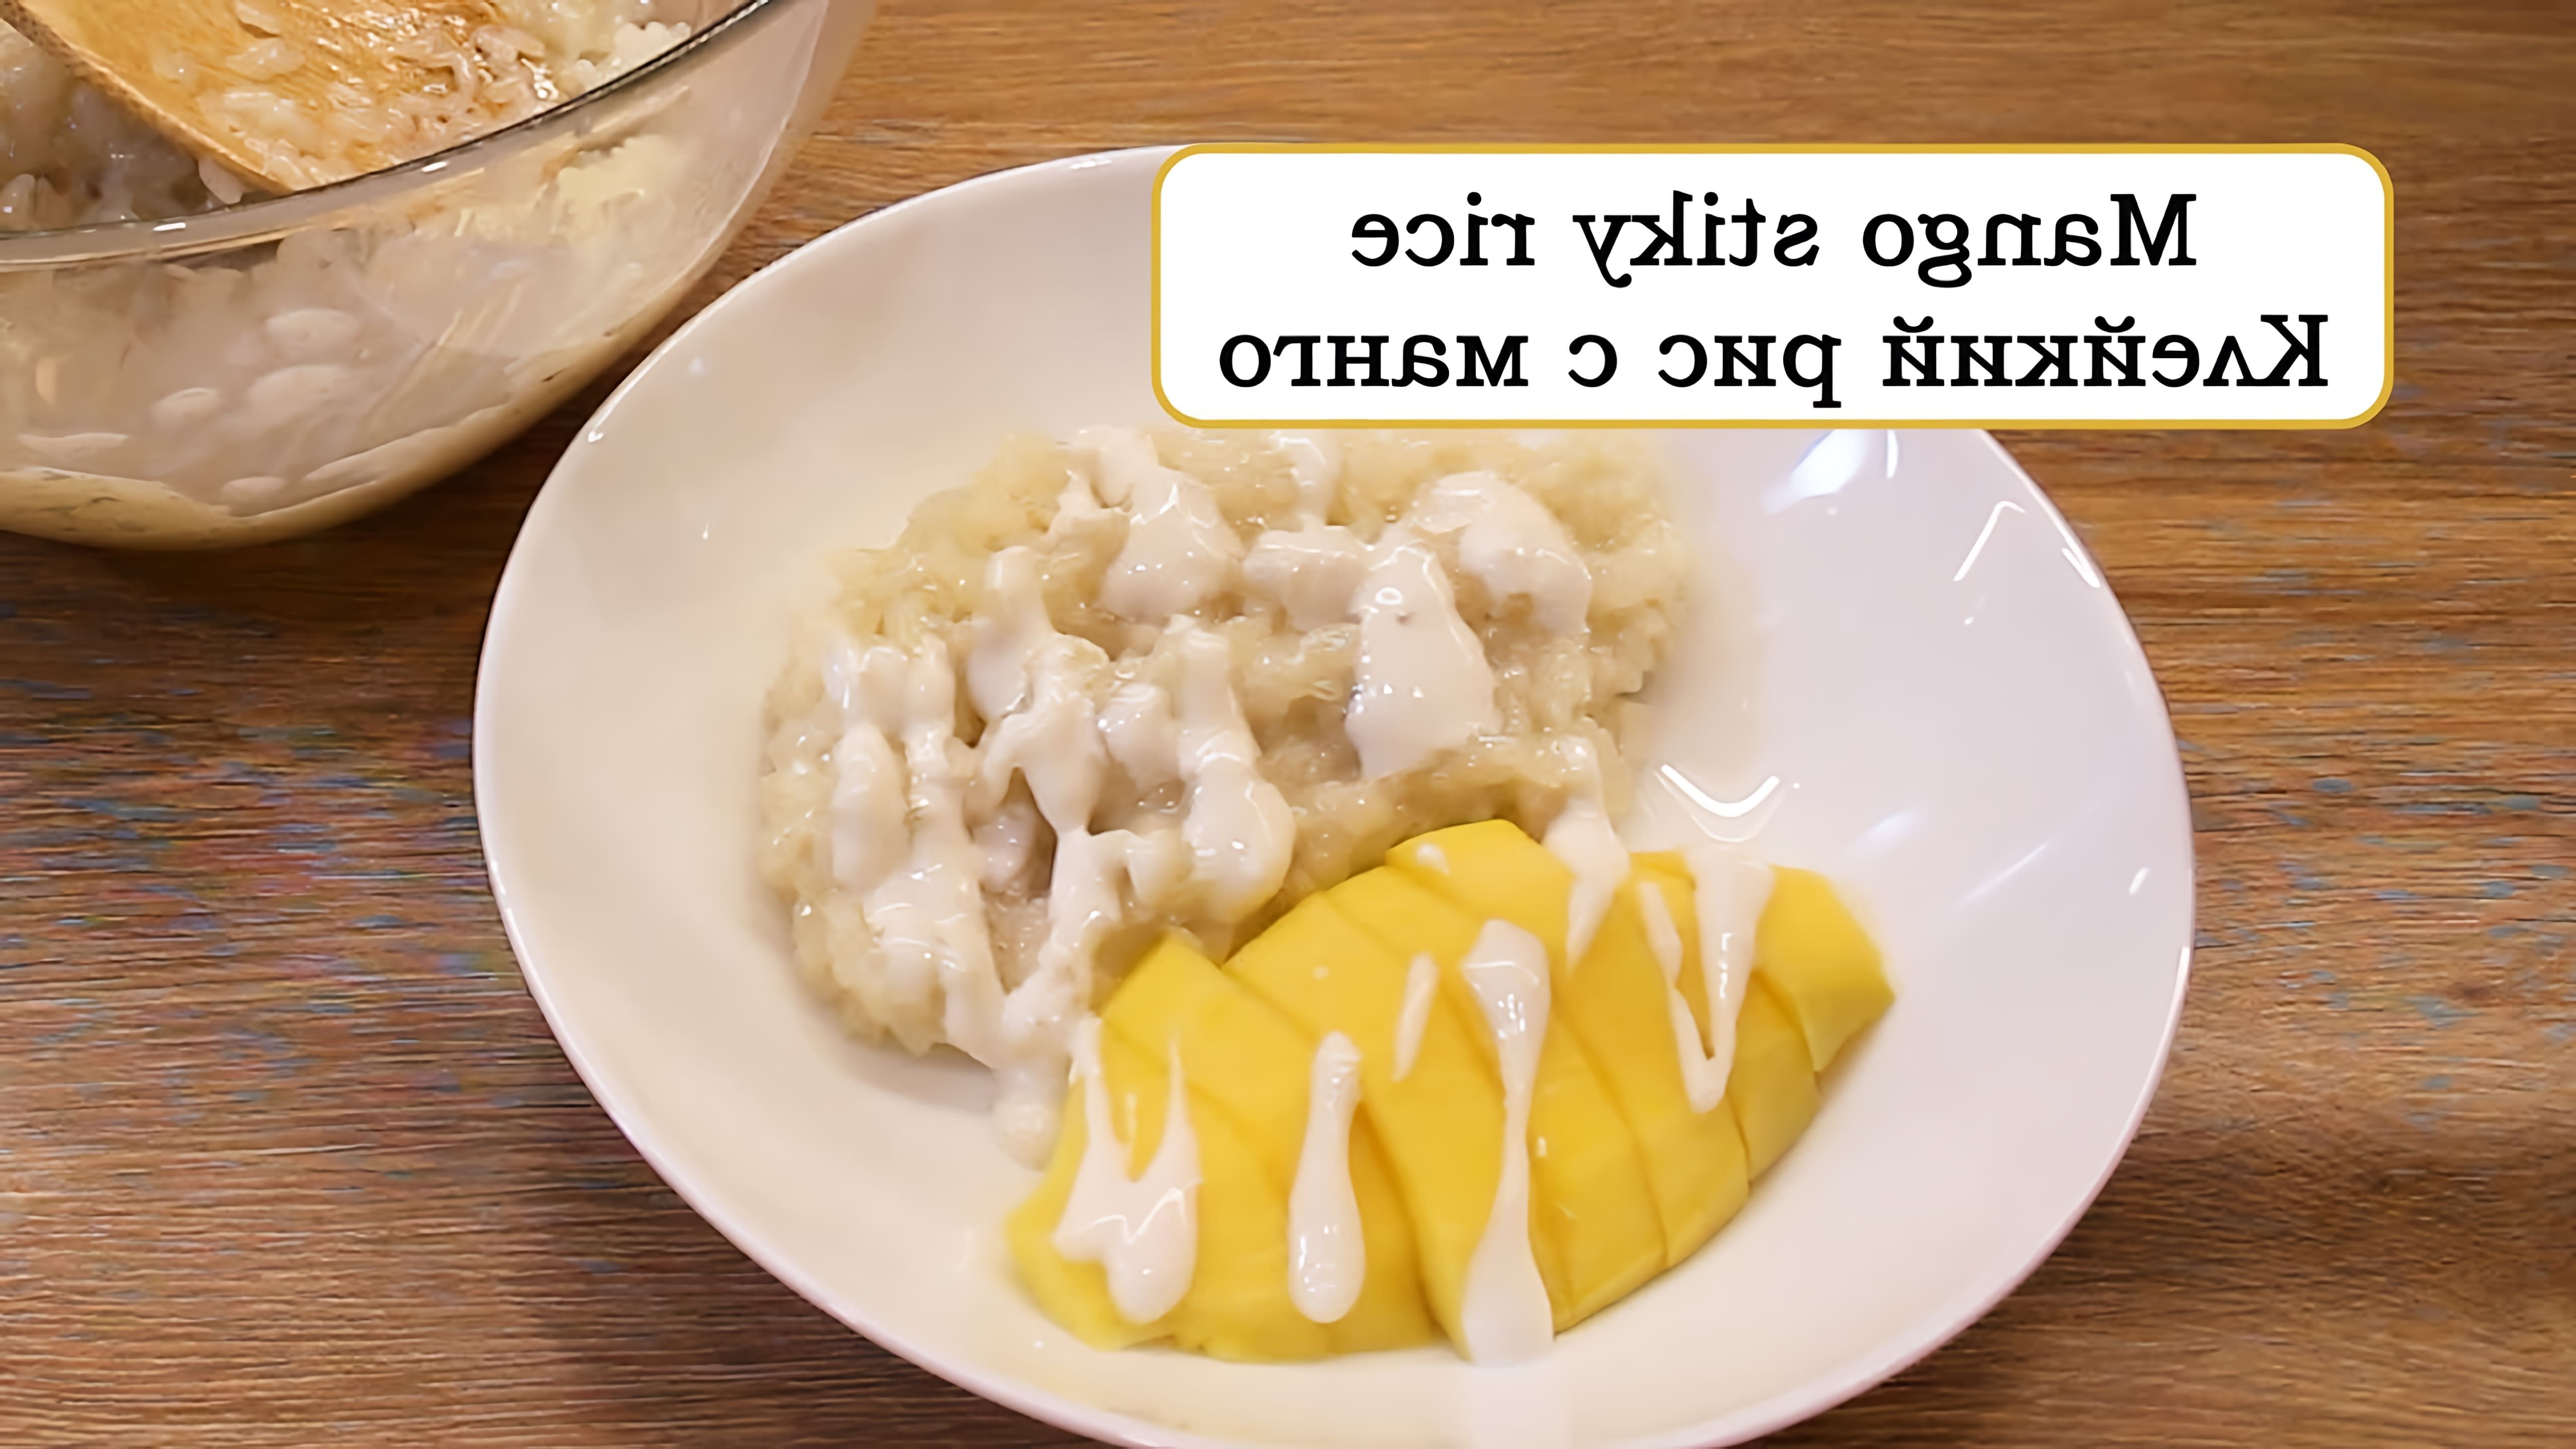 В этом видео демонстрируется процесс приготовления тайского десерта "Клейкий рис с манго"